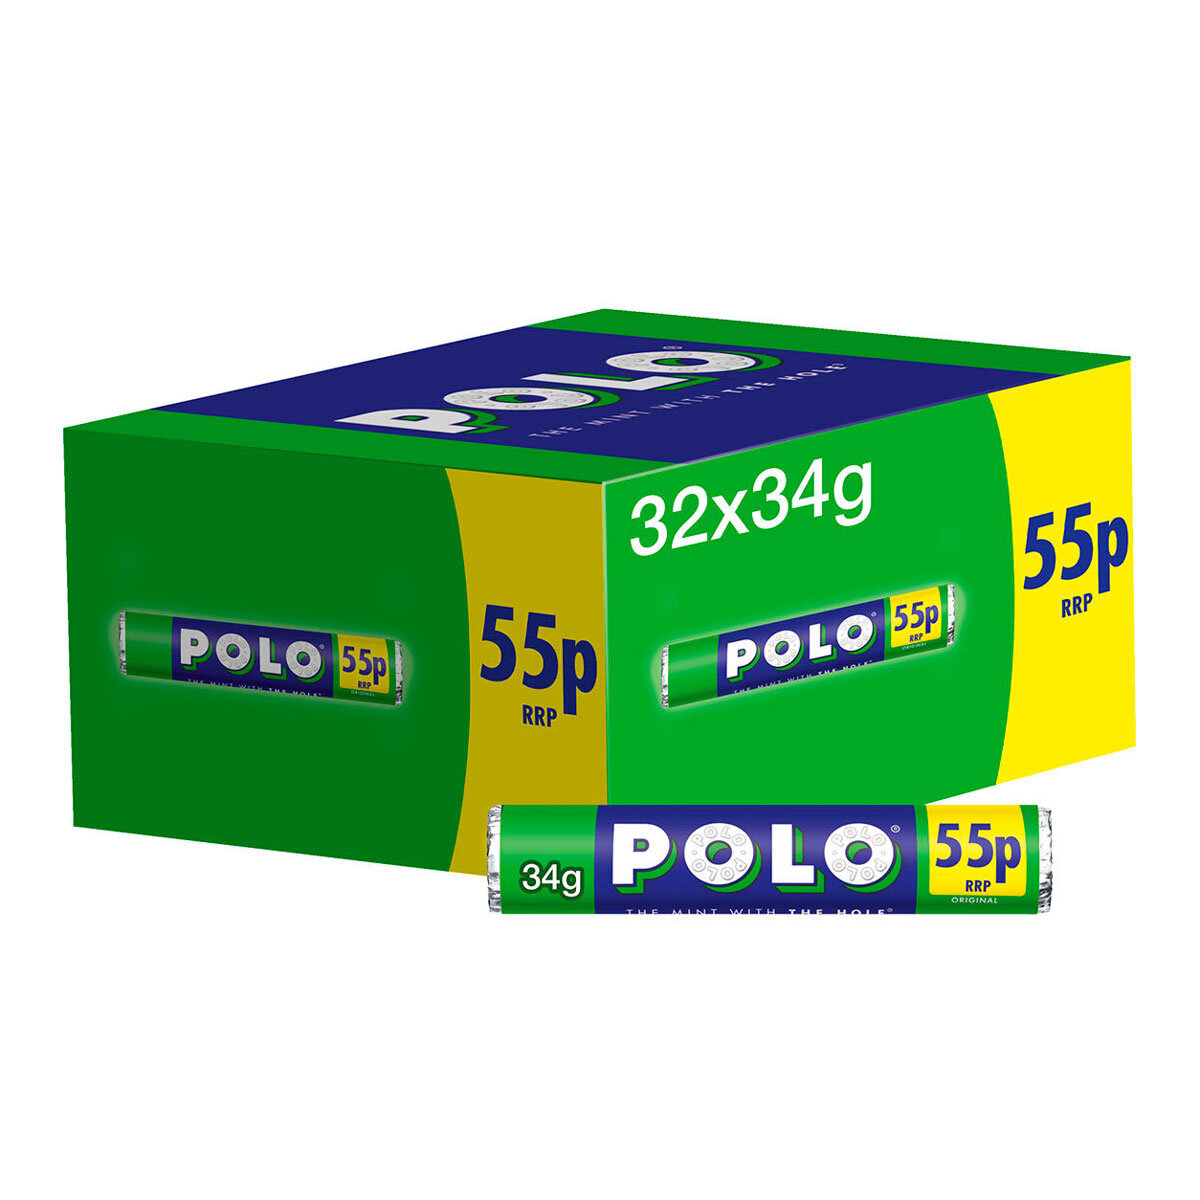 Nestle Polo Original Mints PMP, 32 x 34g